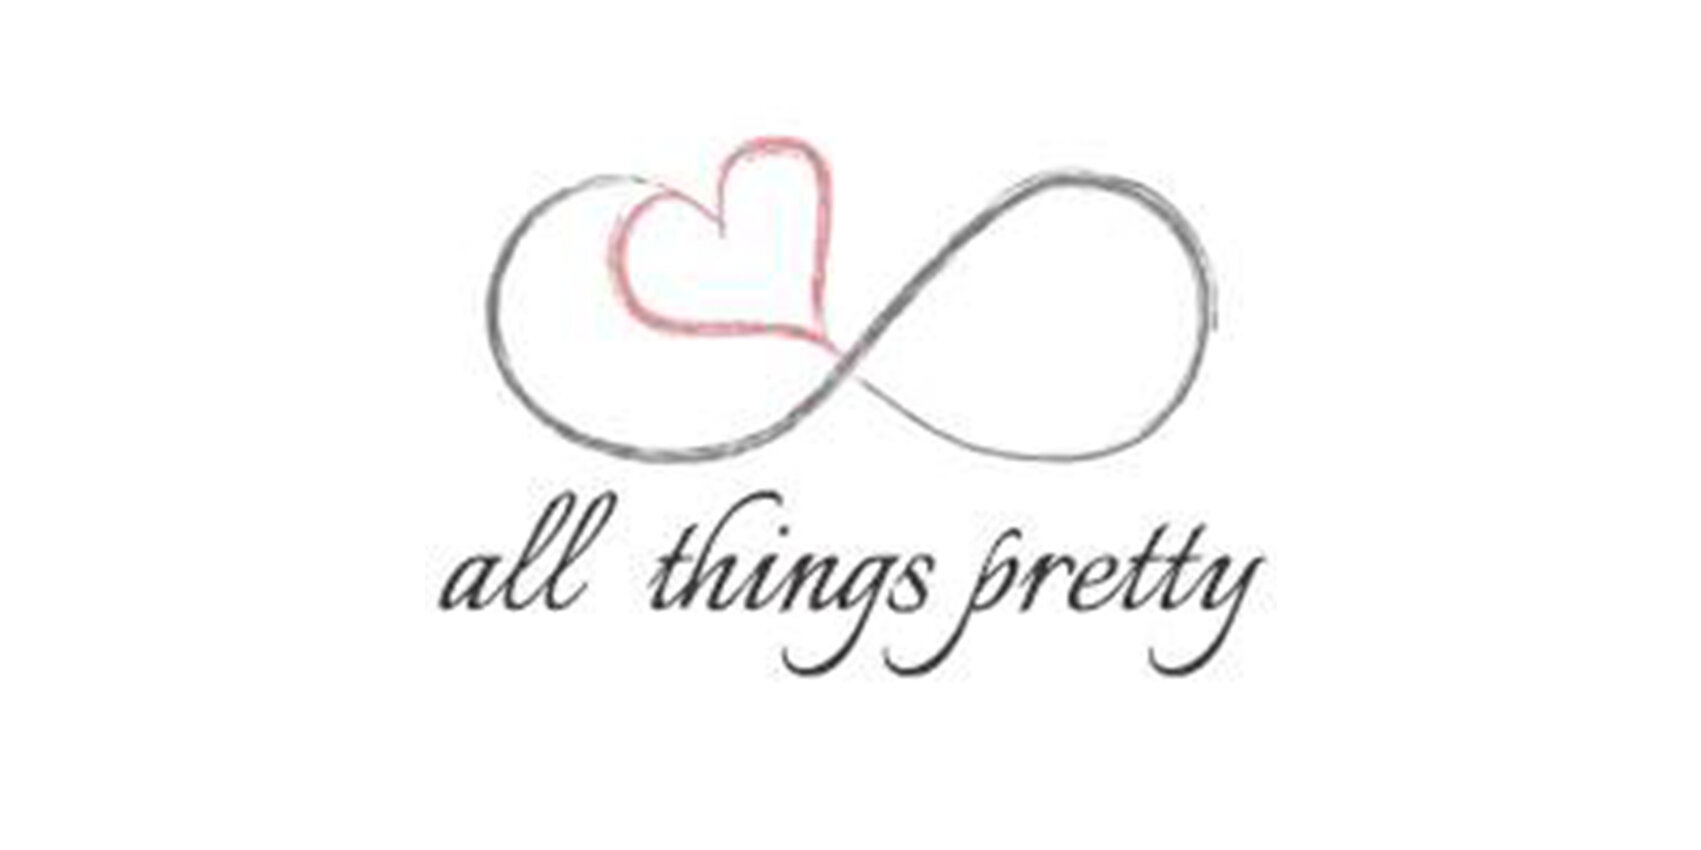 All things pretty logo.jpg